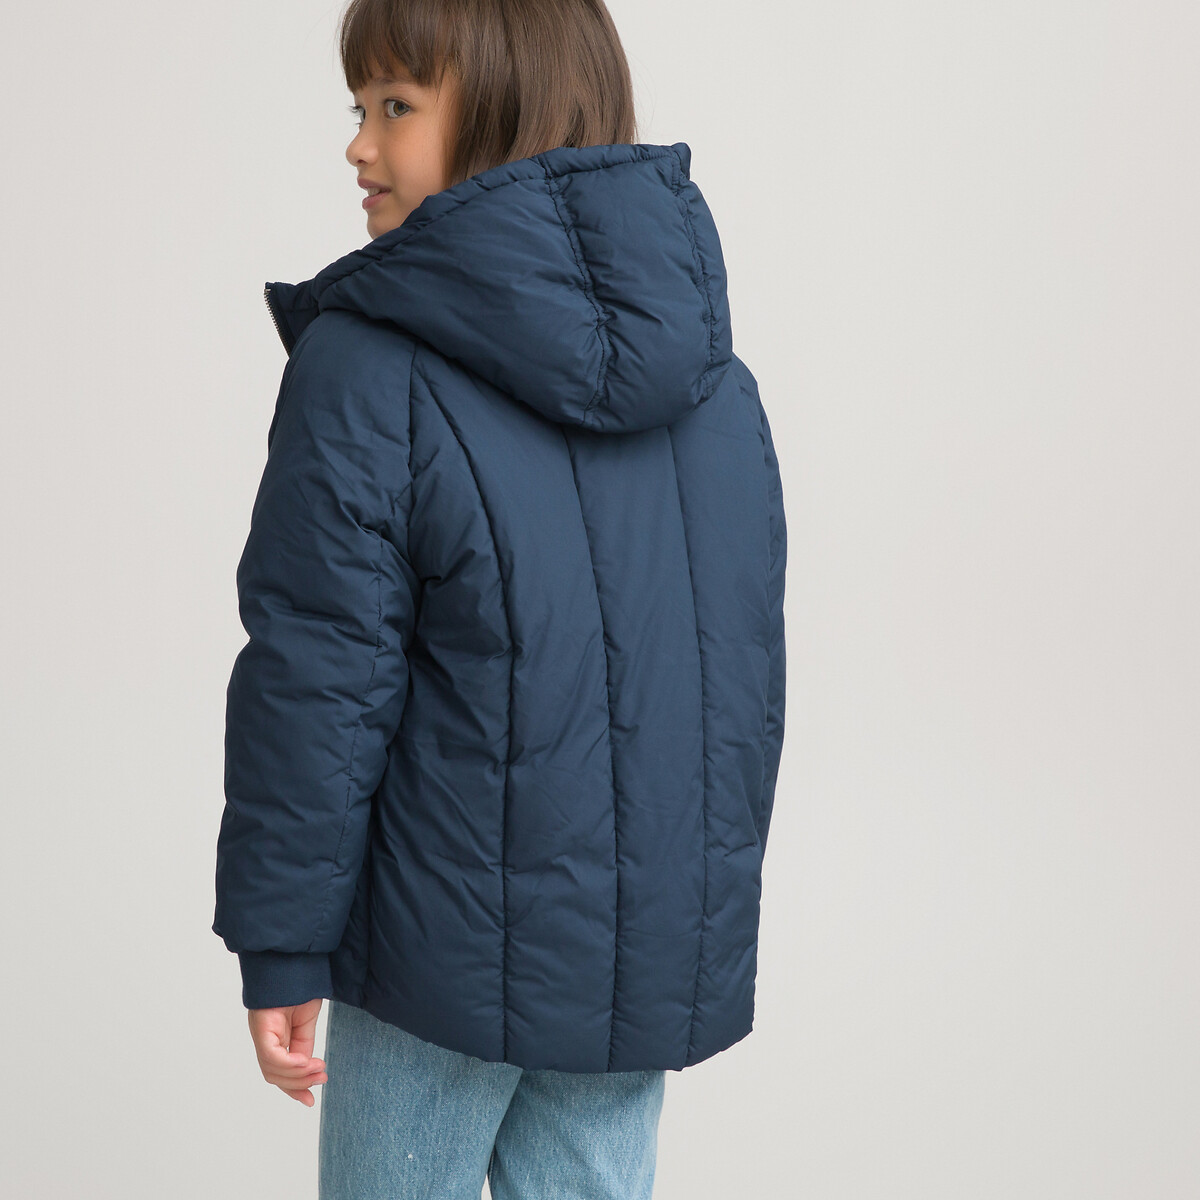 Куртка Стеганая утепленная с капюшоном 3-14 лет 8 лет - 126 см синий